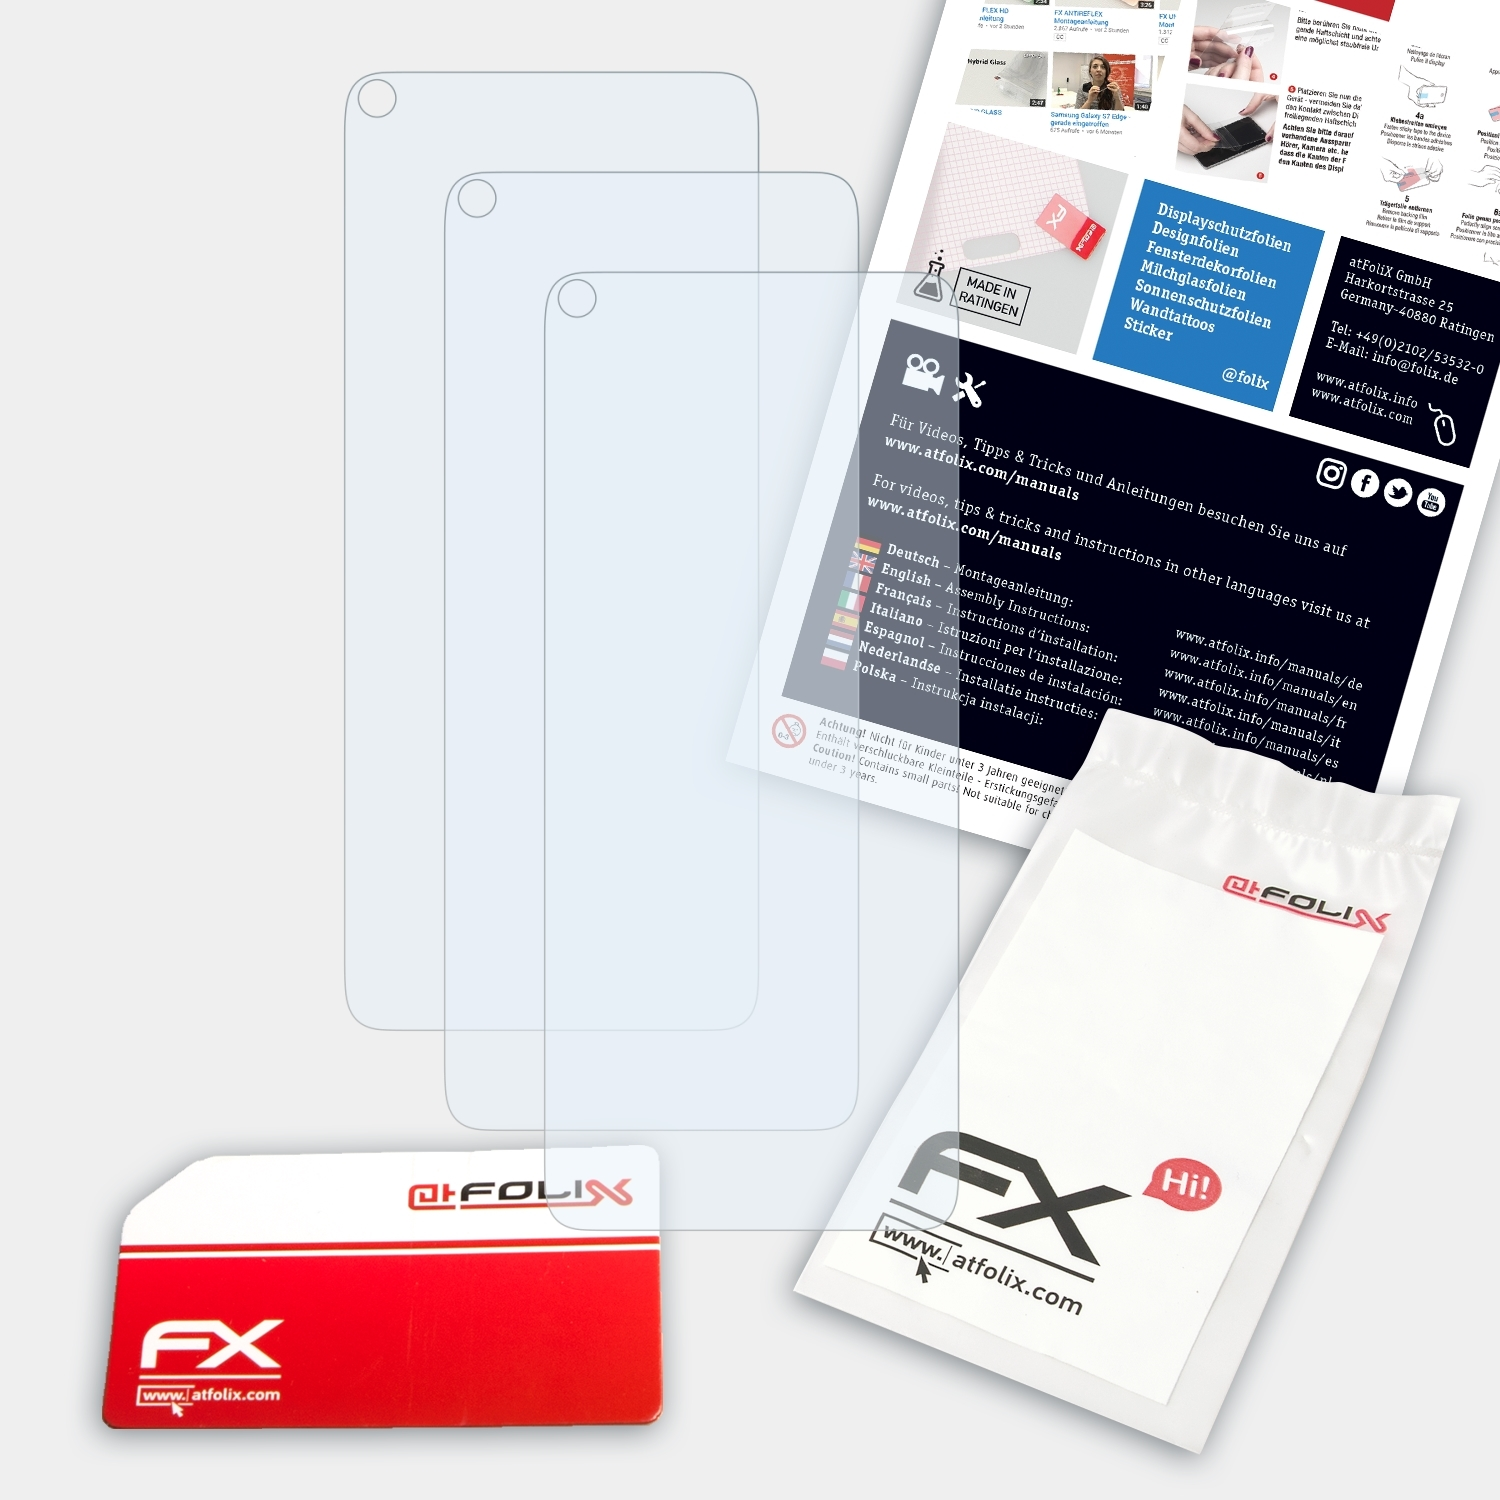 FX-Clear ATFOLIX View5 Wiko Plus) 3x Displayschutz(für